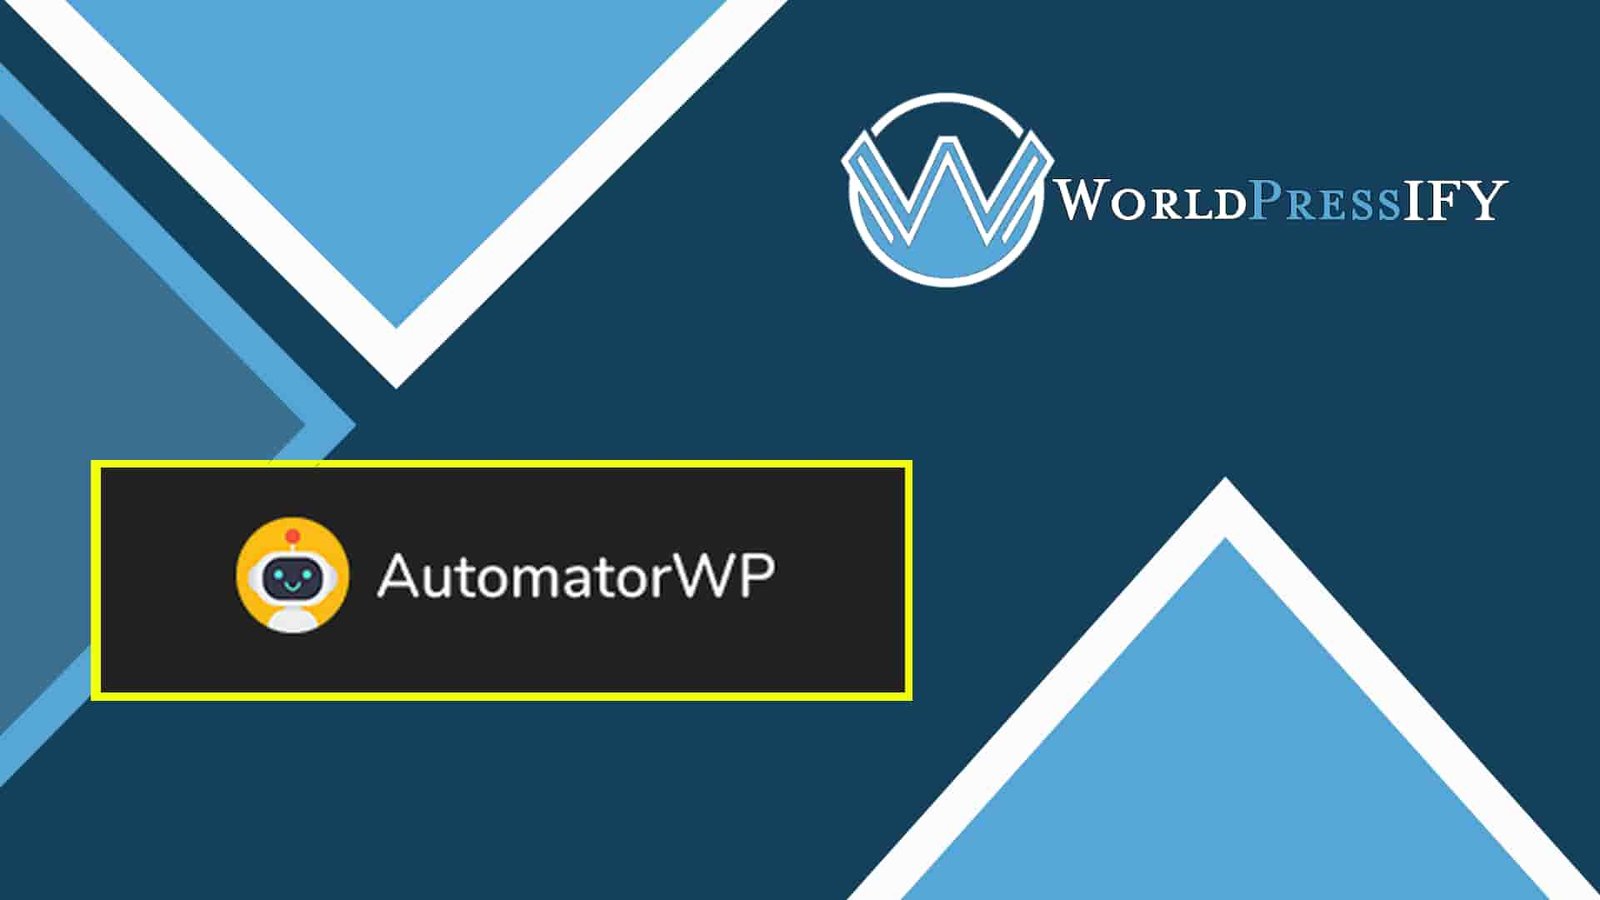 AutomatorWP – Invite Anyone - WorldPress IFY